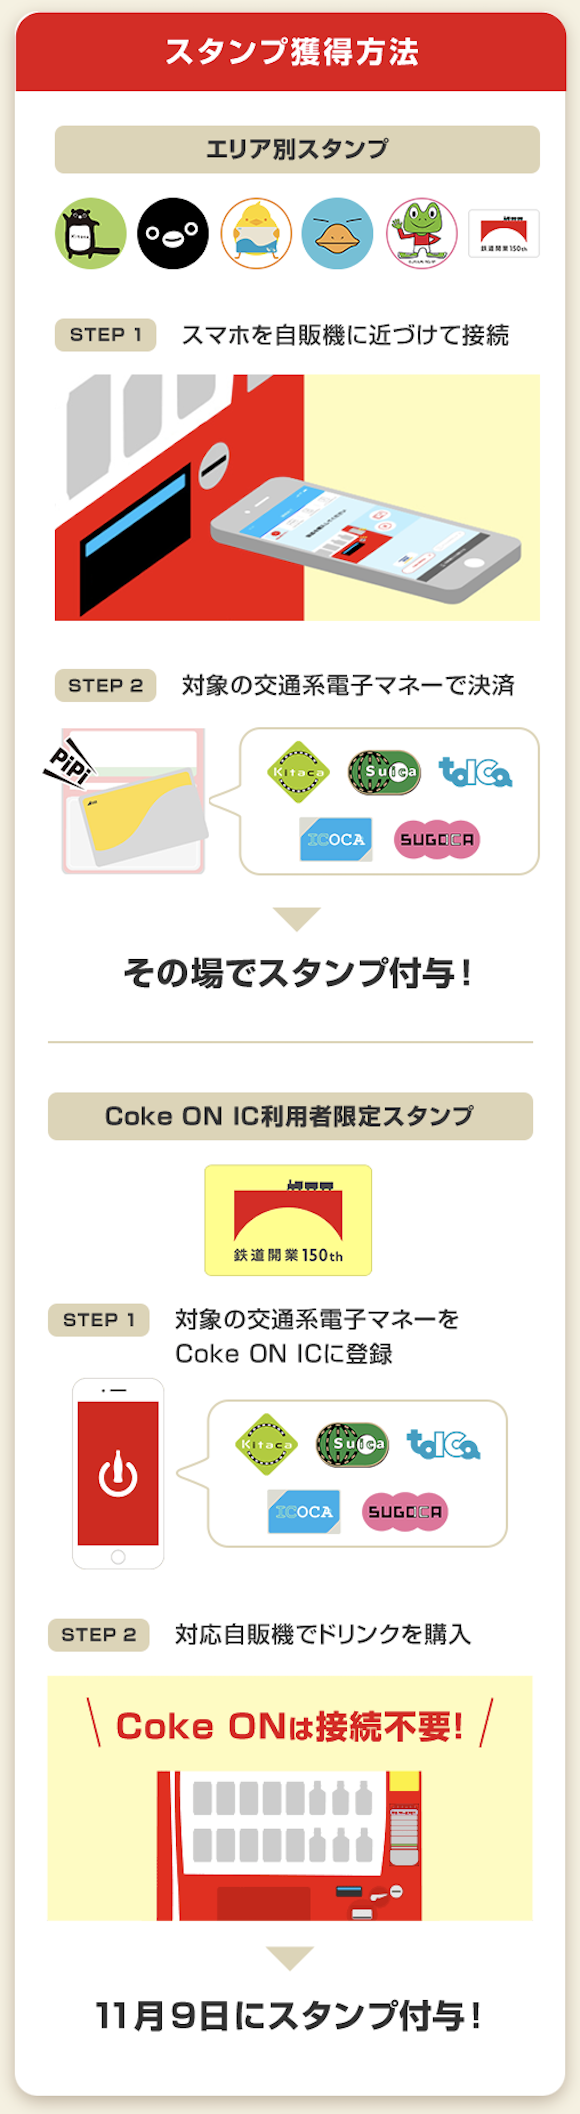 Coke On JR_4